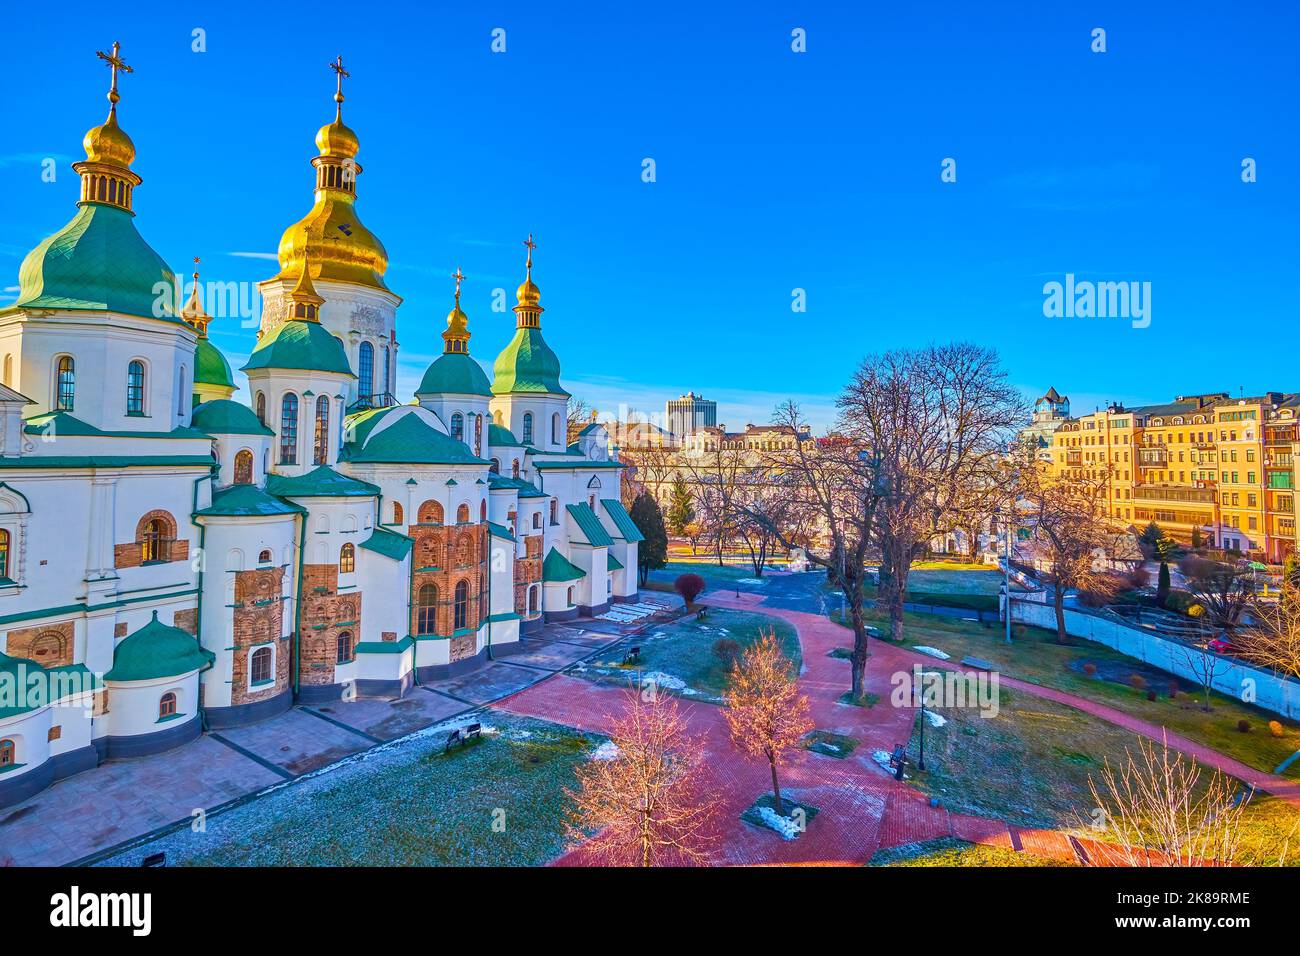 El courtayrd nevado del santuario nacional de Santa Sofía con la catedral medieval, Kiev, Ucrania Foto de stock